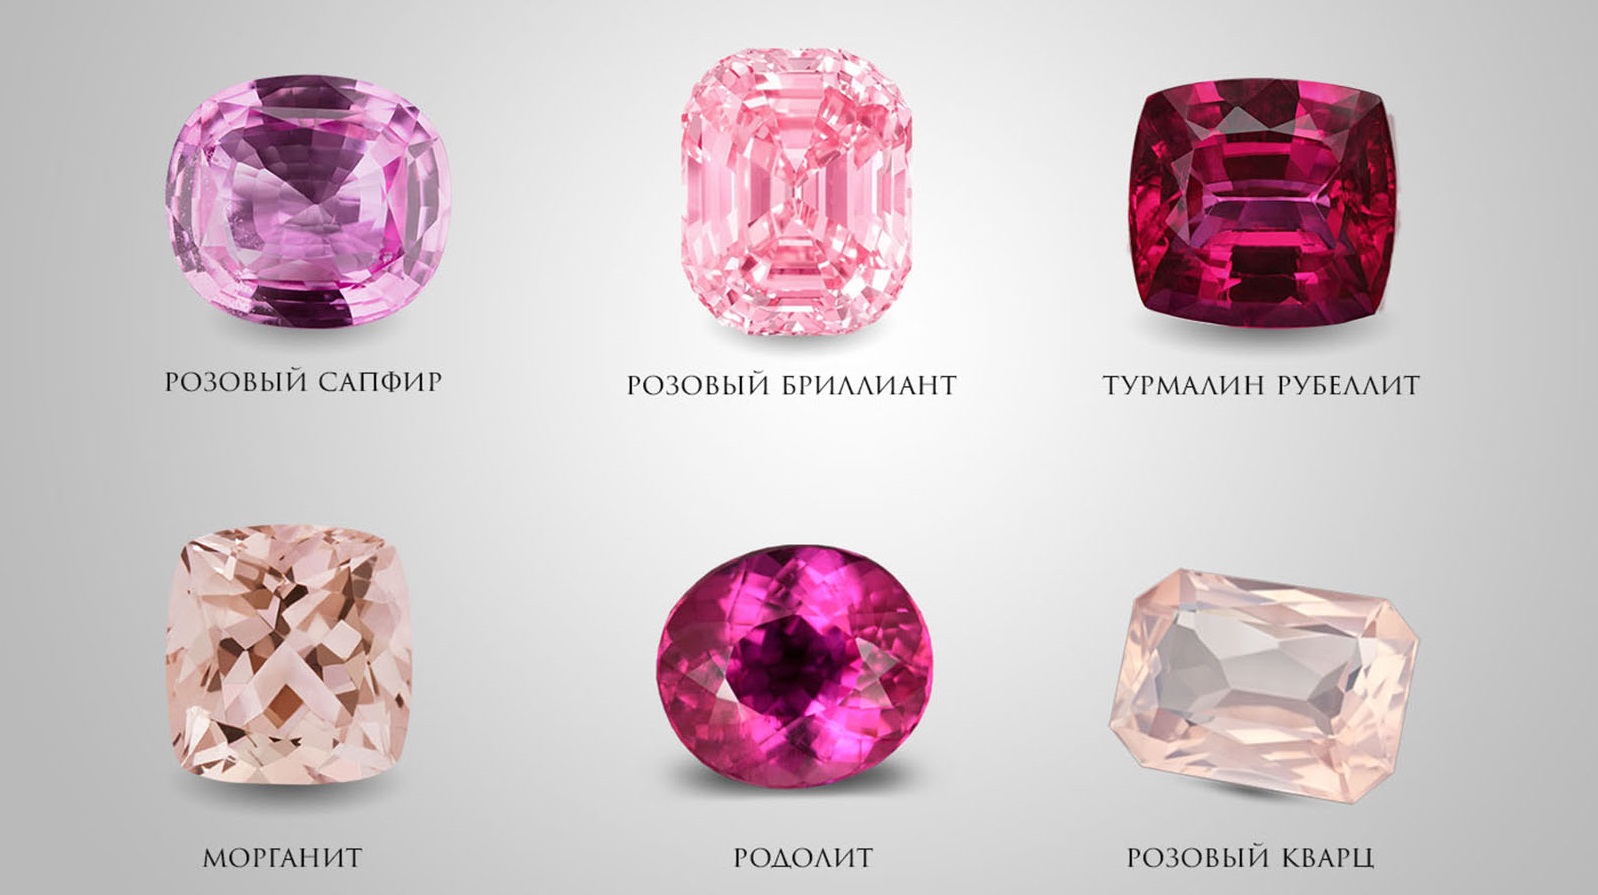 Розовый ювелирный камень название. Розовый камень в ювелирных. Розовый прозрачный камень в ювелирных изделиях. Розовый полудрагоценный камень. Полудрагоценный камень розового цвета.